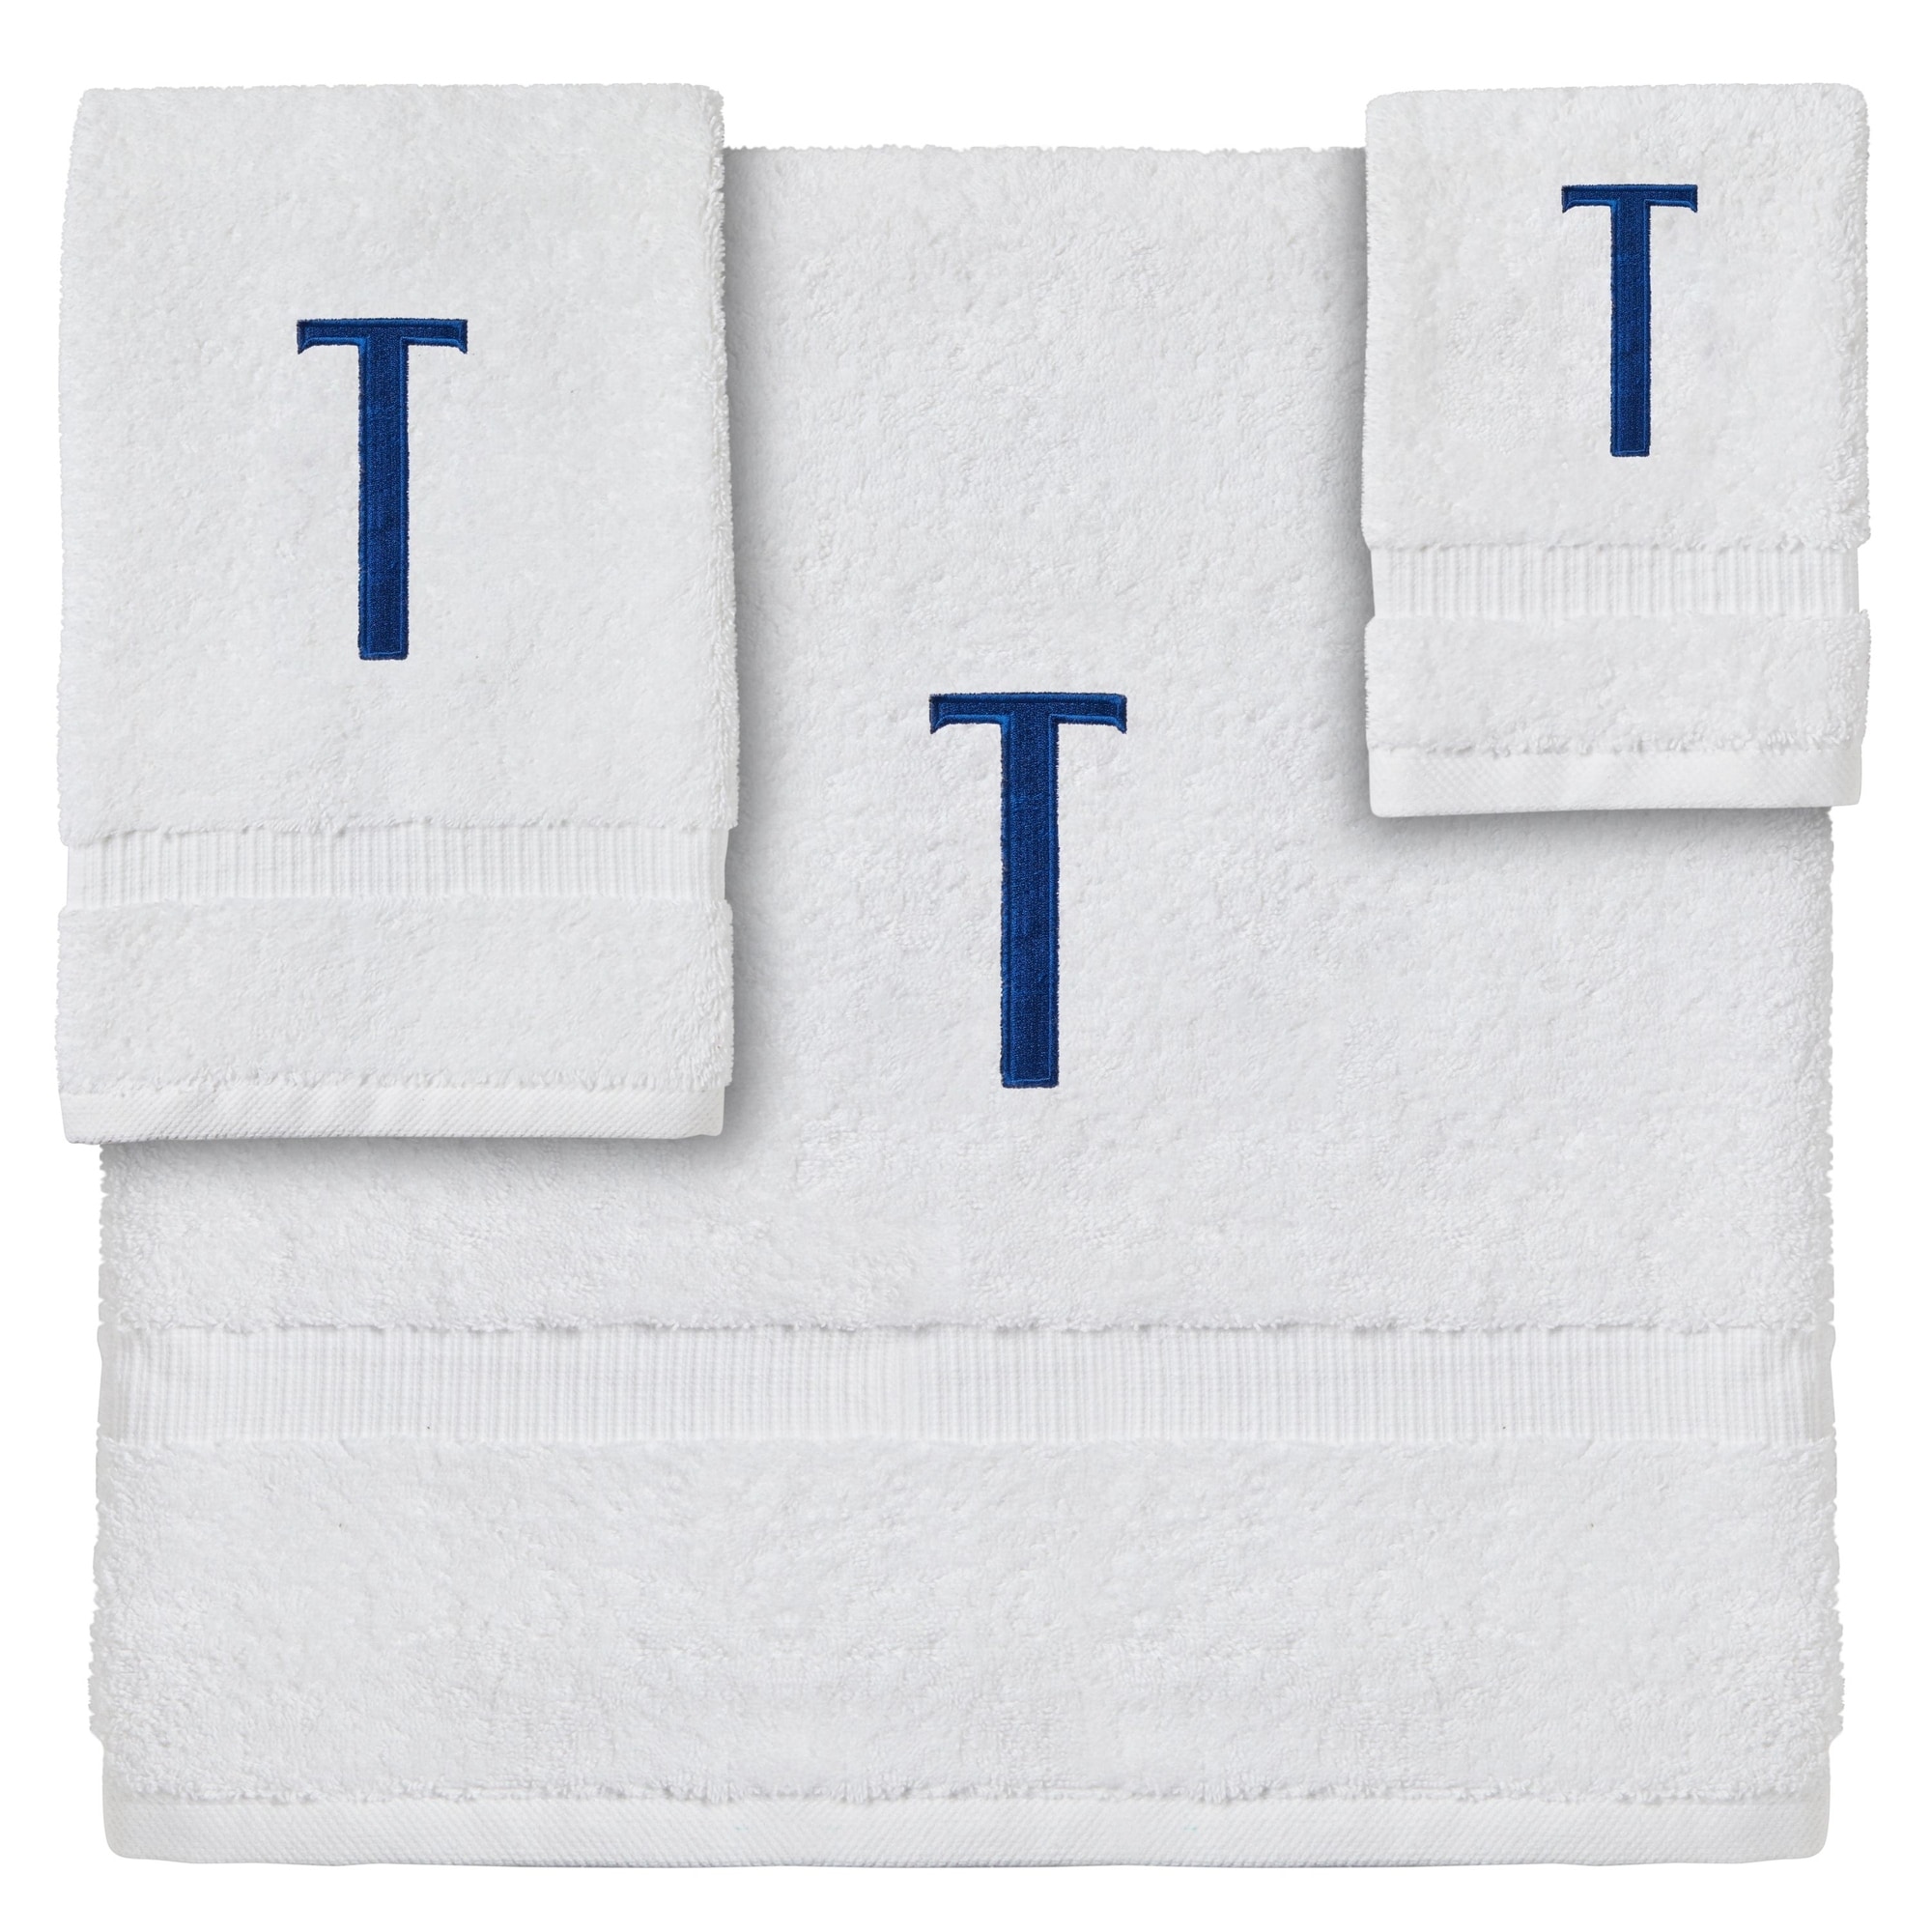 Laura Ashley Juliette 3-Piece White Cotton Terry Towel Set